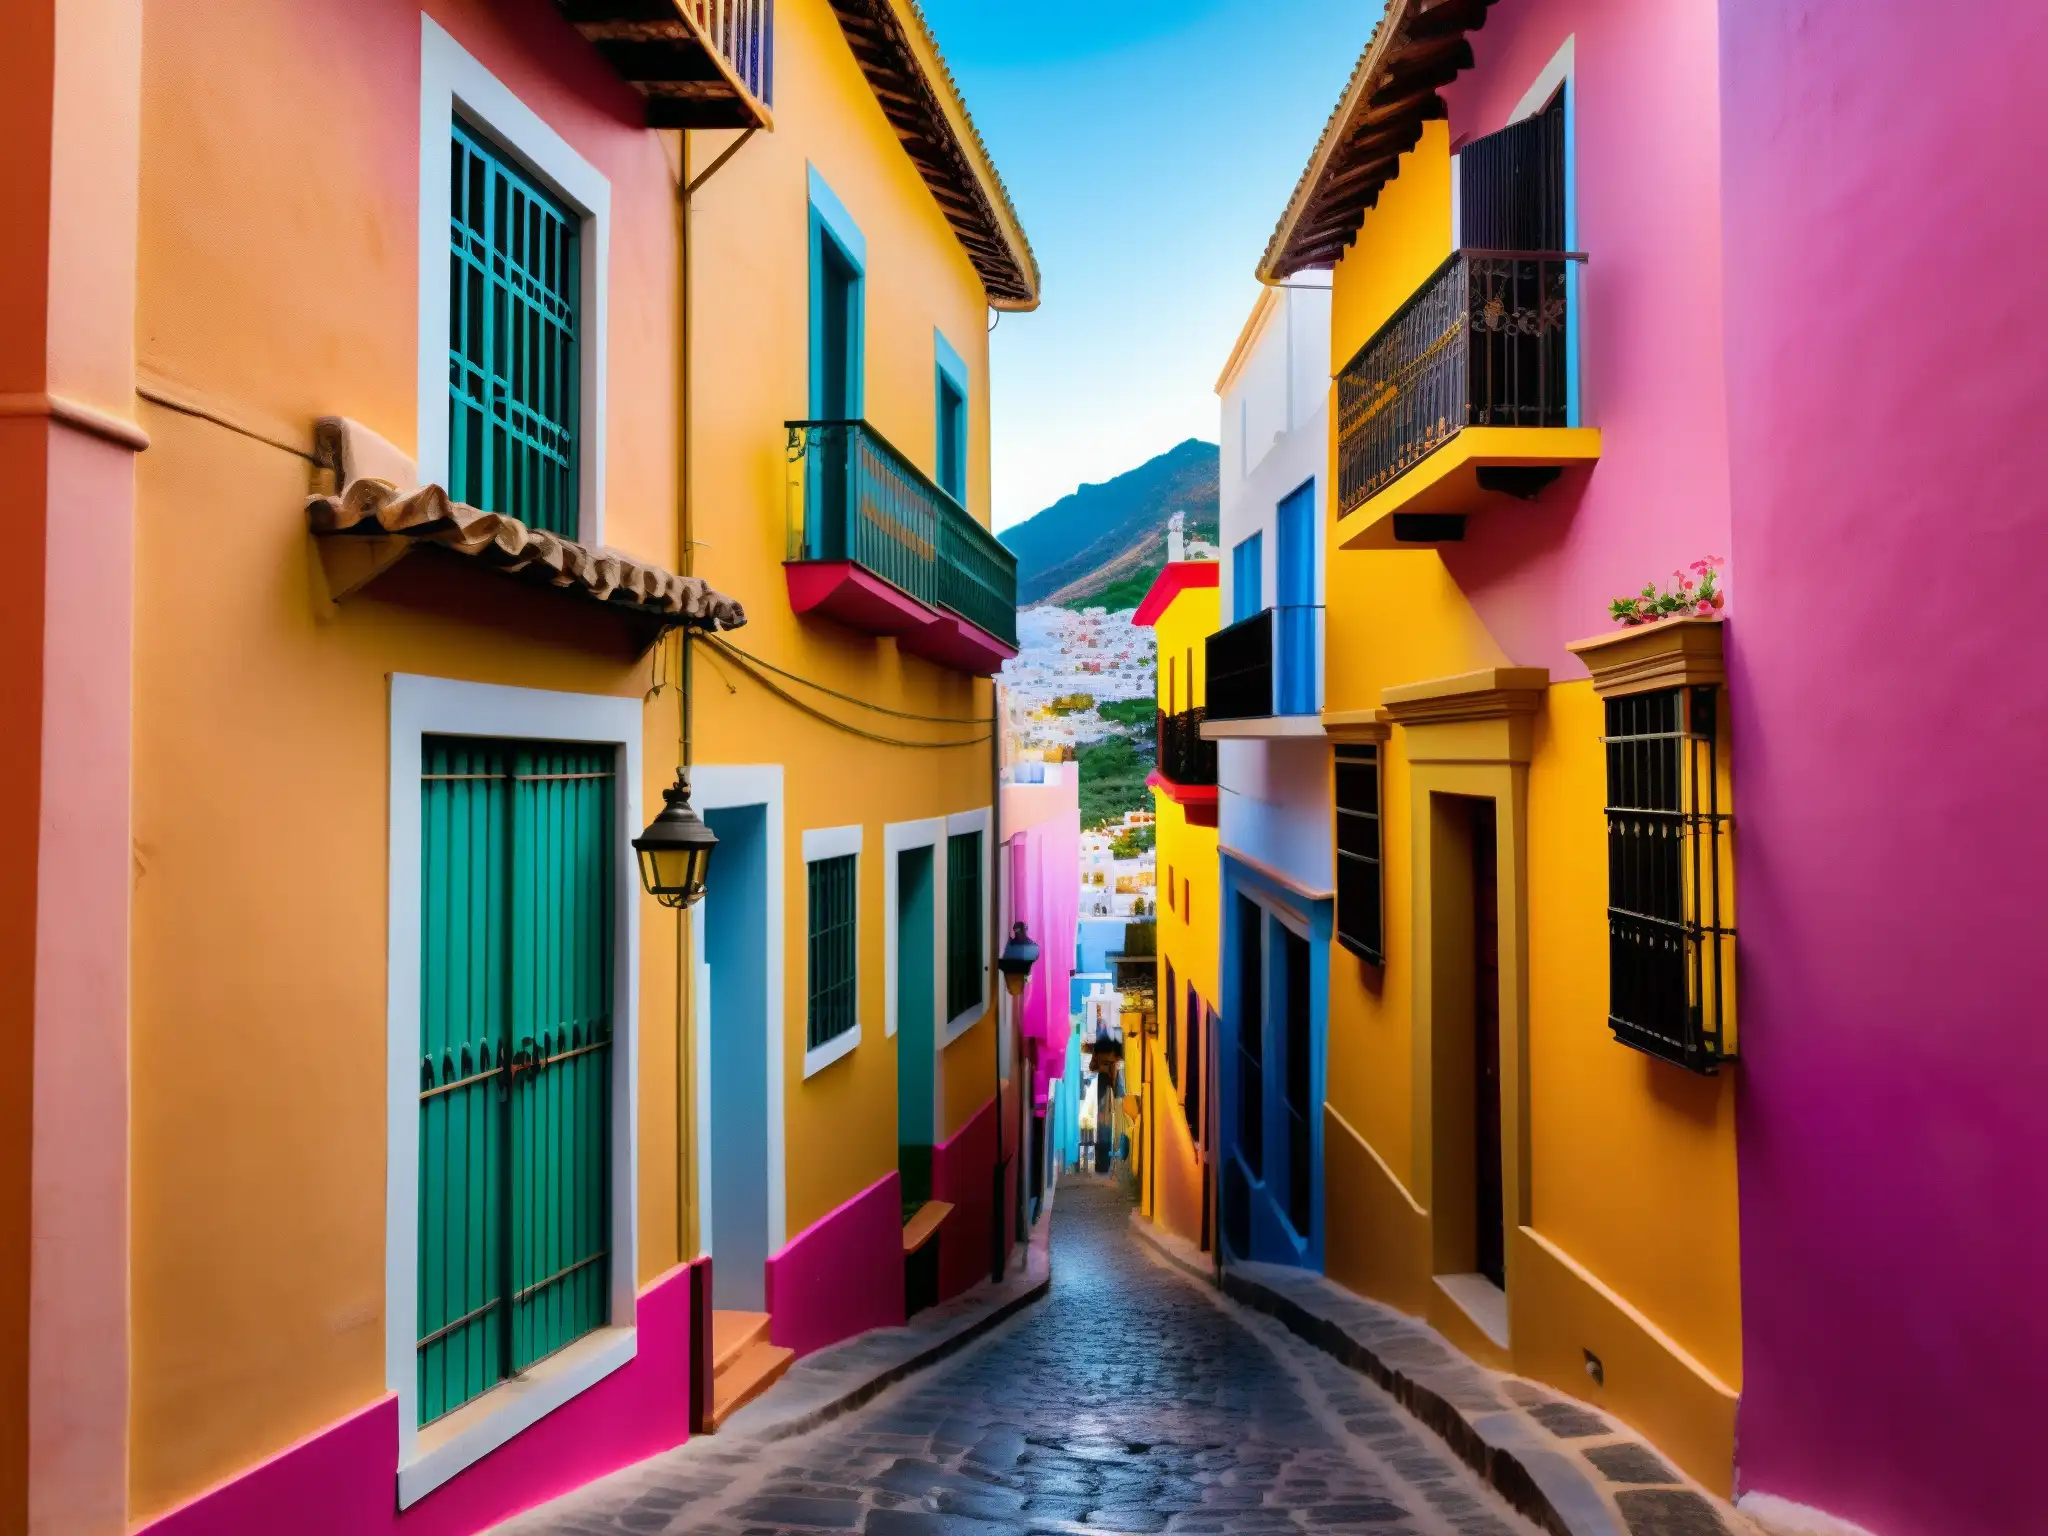 Alleyway con edificios coloridos, luz dorada y pareja en abrazo apasionado